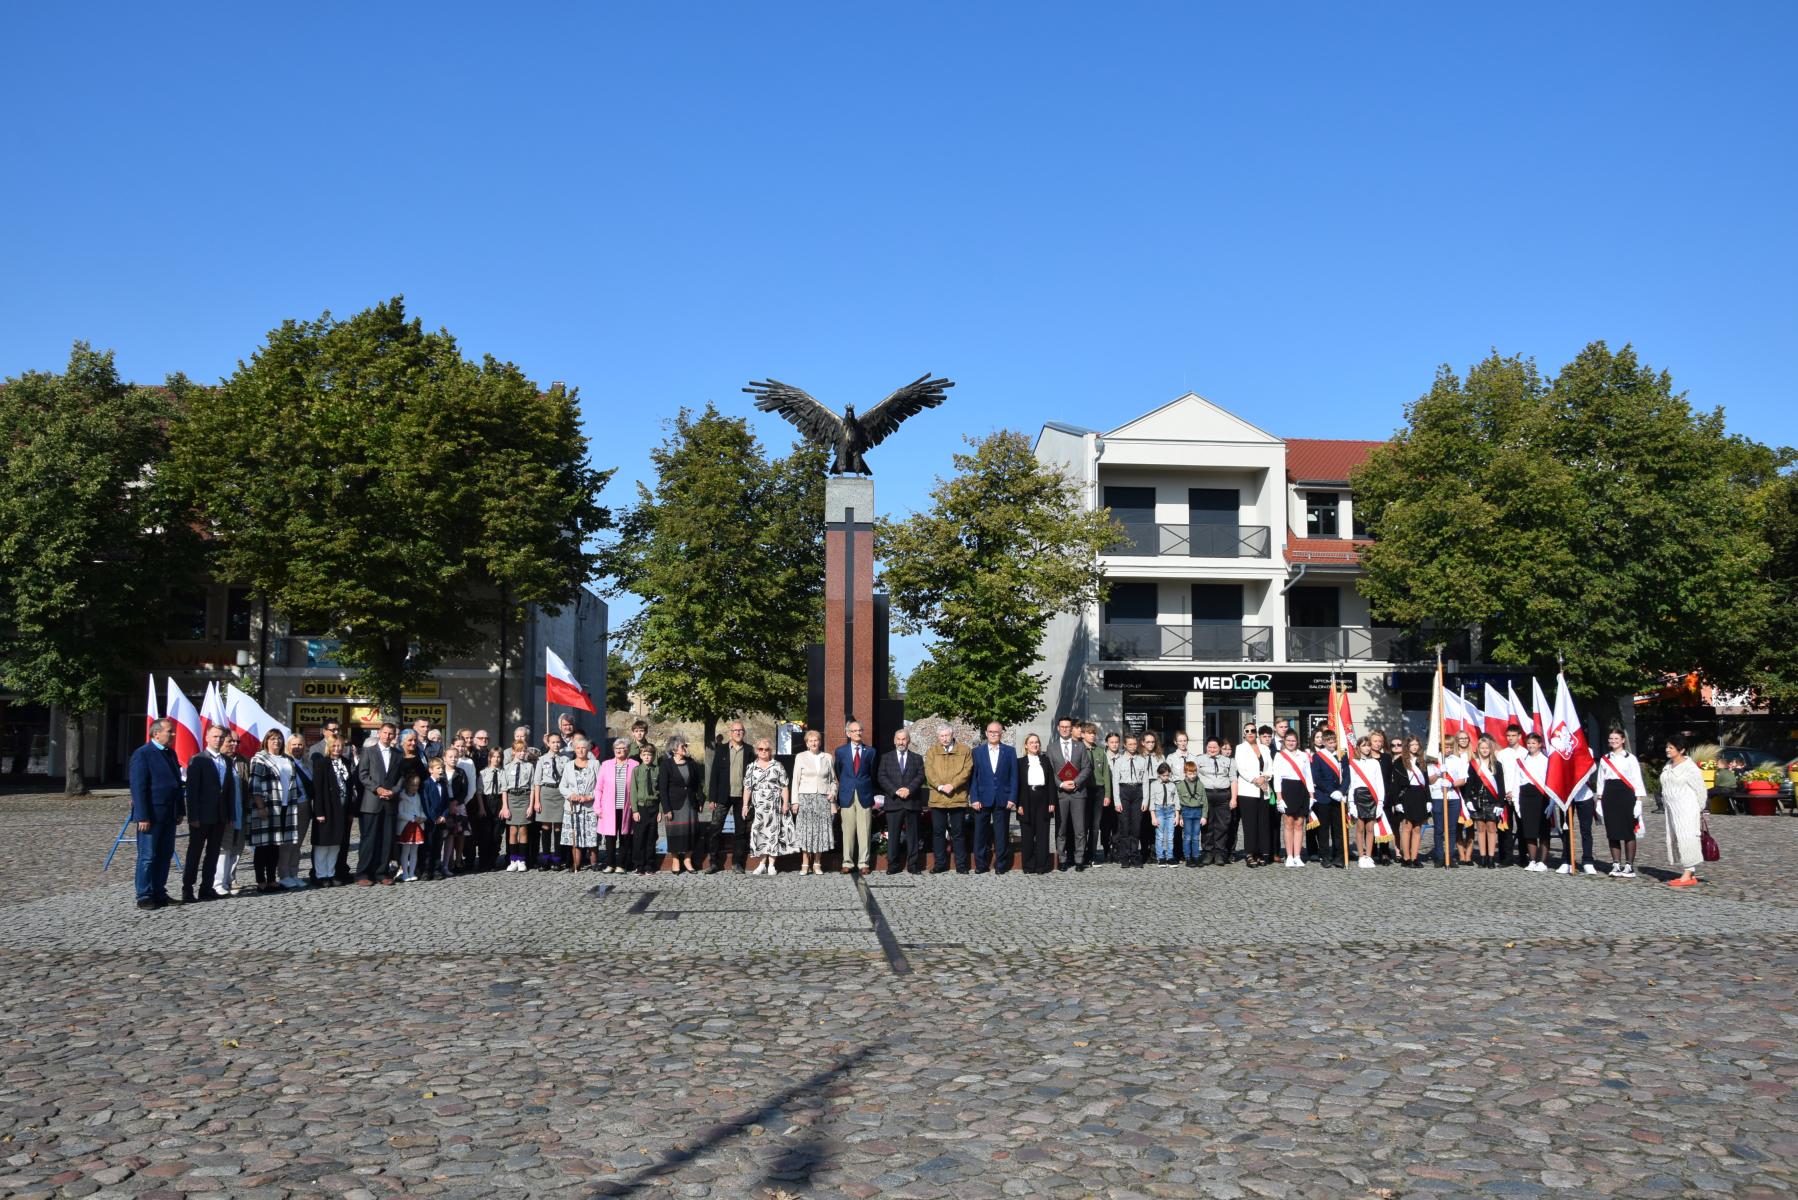 Powiększ zdjęcie. Duża grupa ludzi stoi, w tle pomnik Orła Białego, kamienica, drzewa, niebieskie niebo